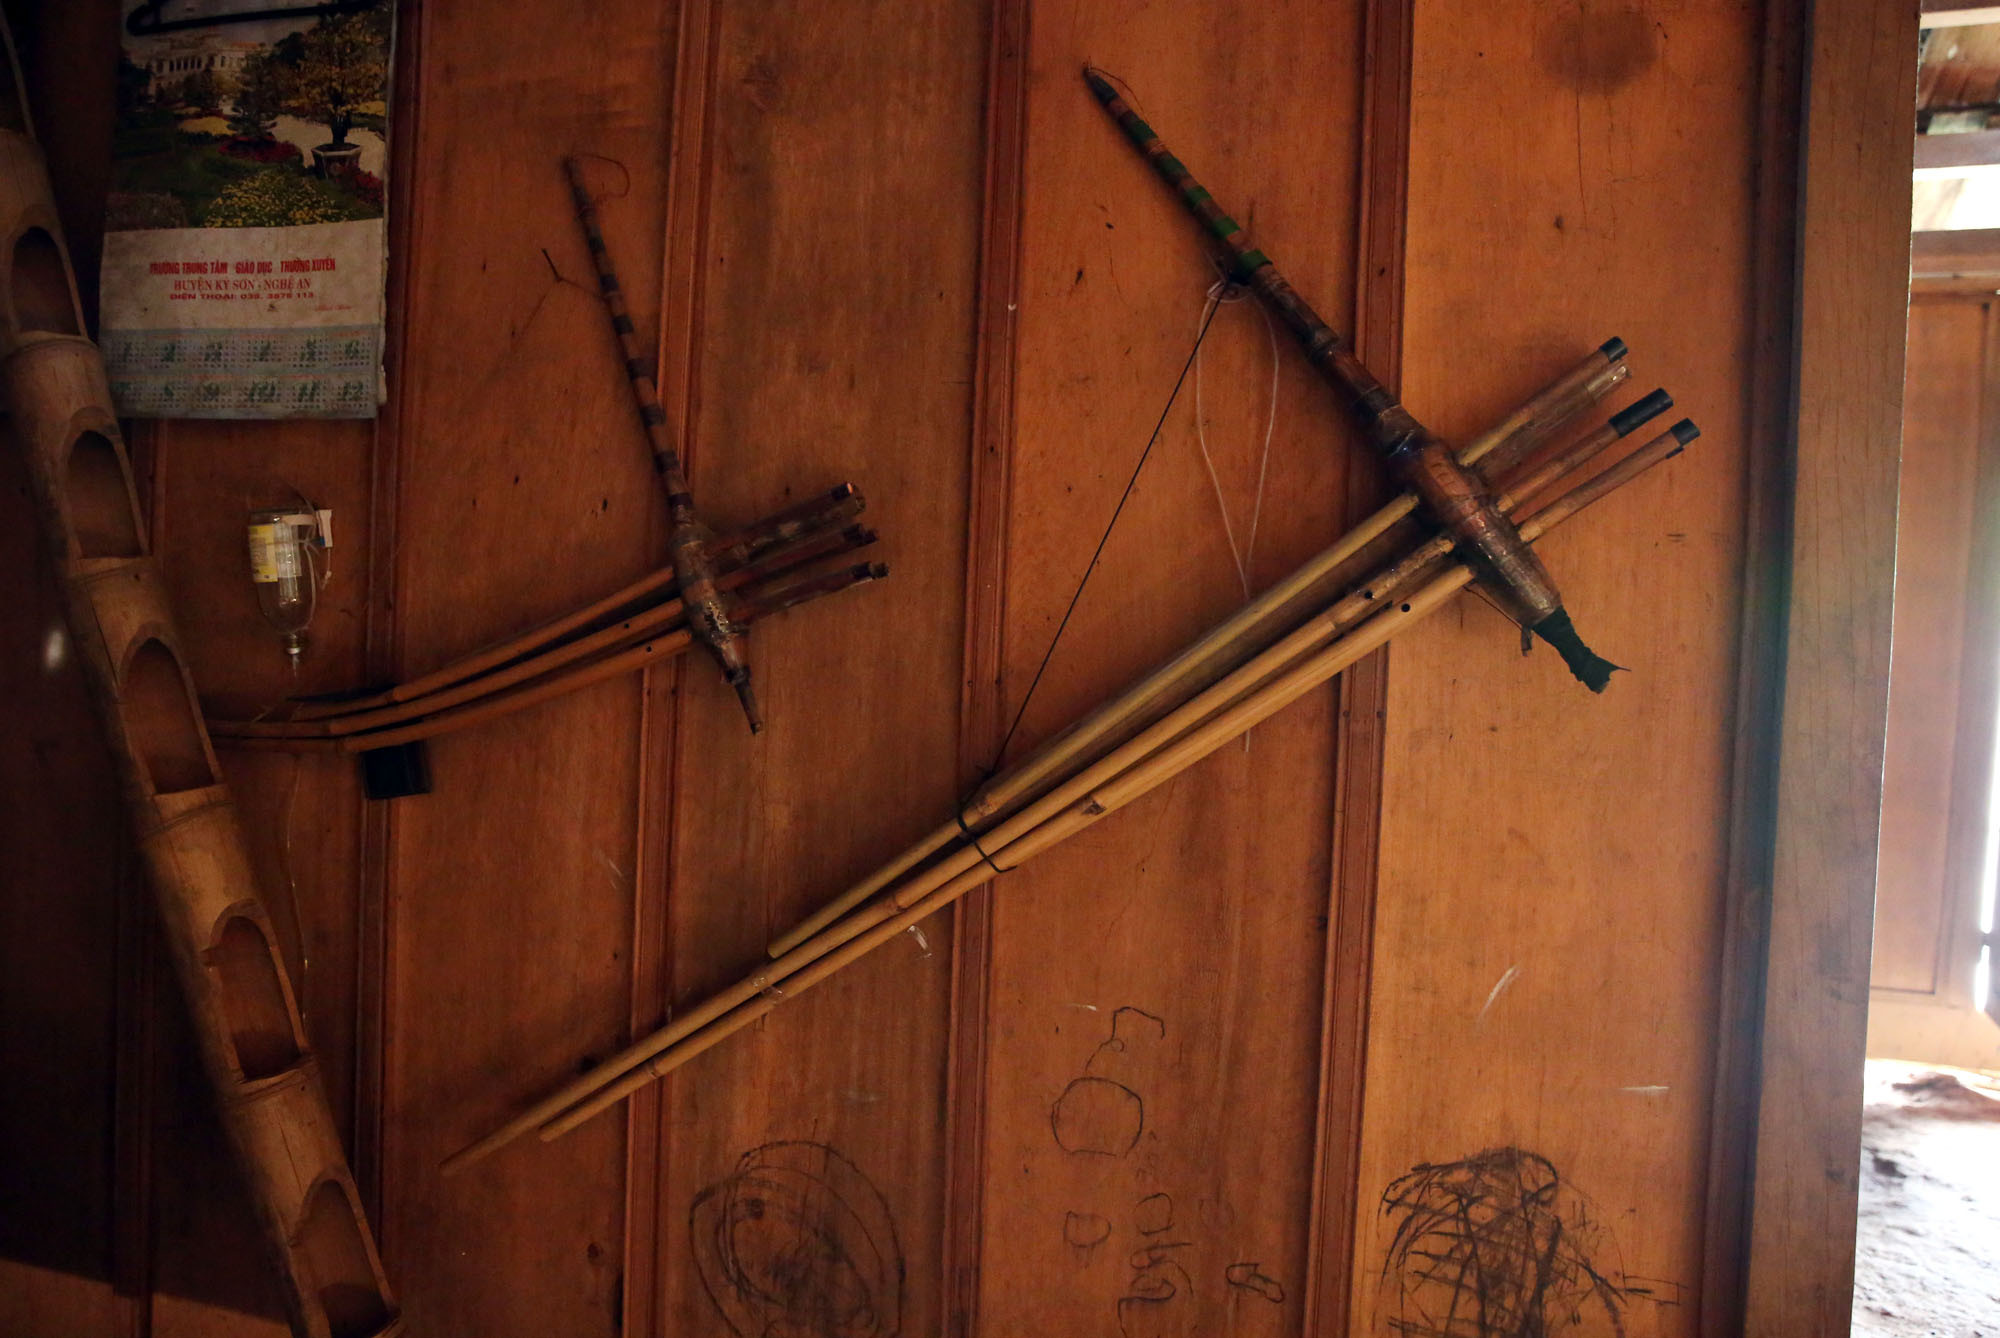 Trên vách nhà, những người đàn ông vẫn treo khèn và các nhạc cụ của người Mông. Đây là những thứ dành riêng cho những người đàn ông. Ảnh : Hữu Vi